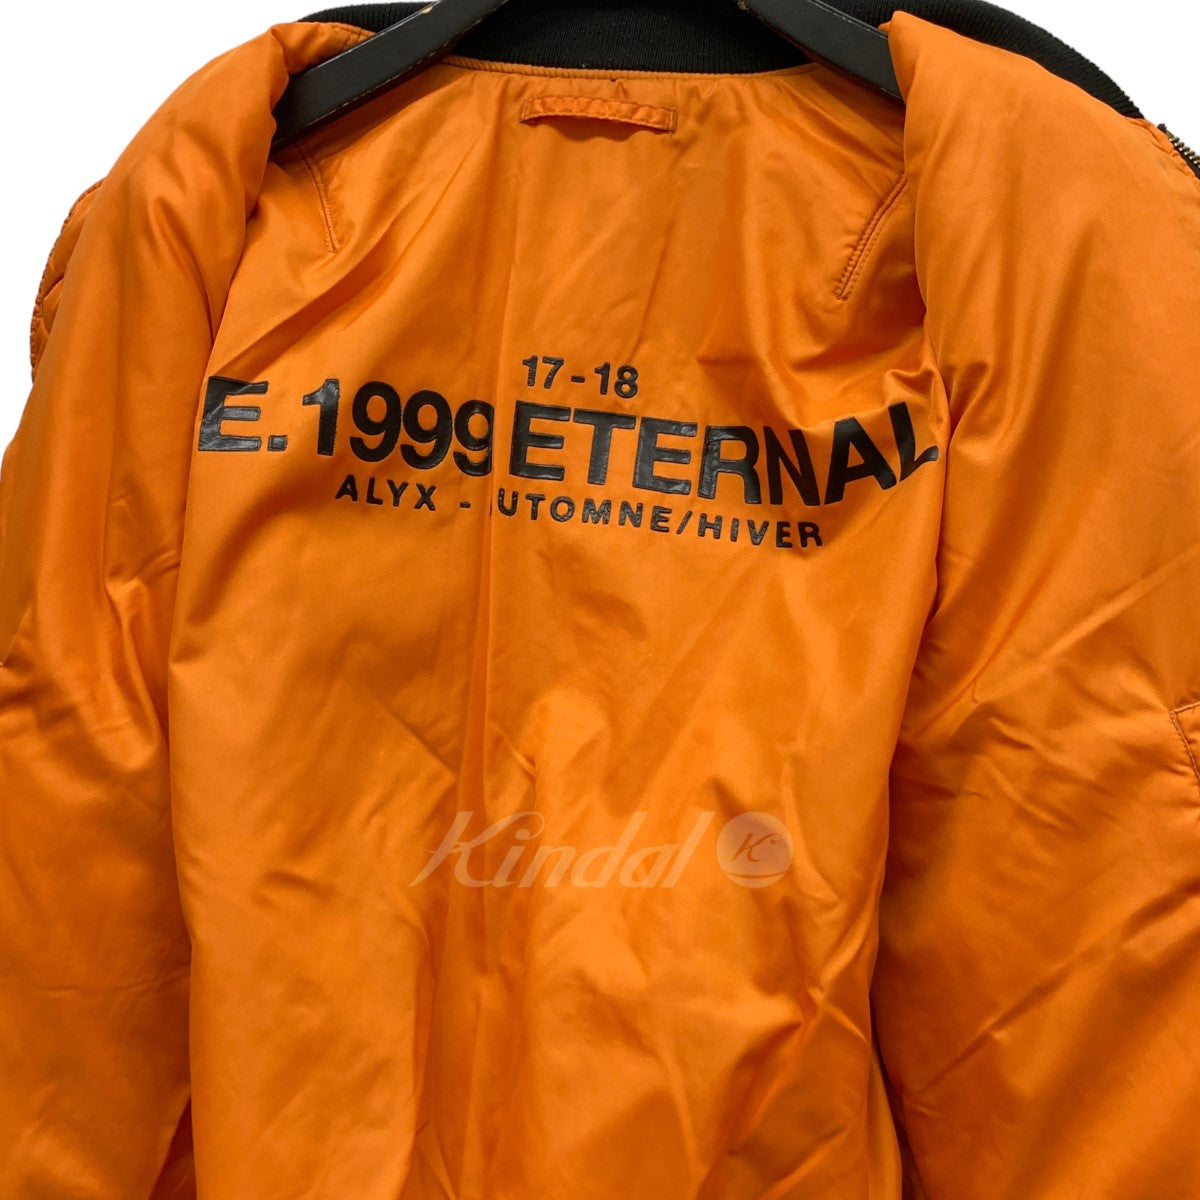 「MA-1 E．1999 ETERNAL BOMBER JACKET」ダメージ加工MA-1ジャケット